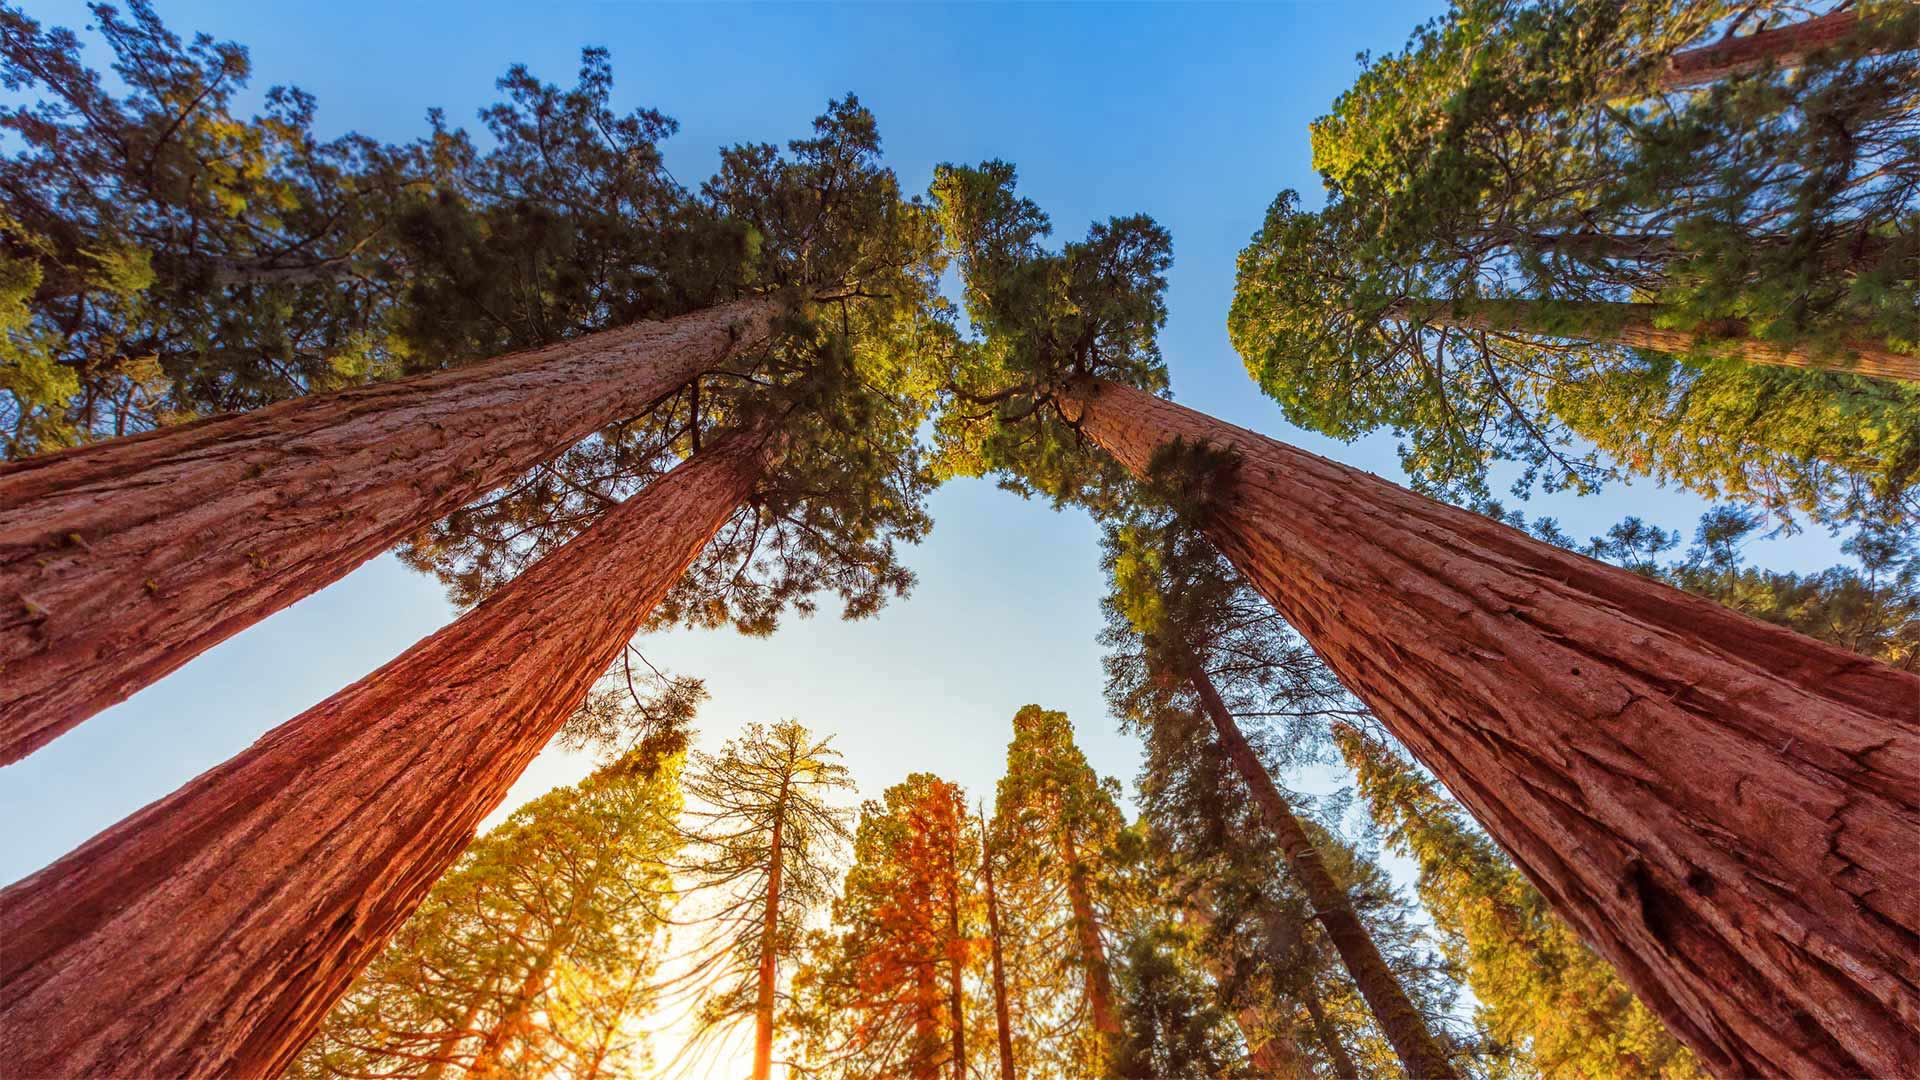 ｢ジャイアントセコイア｣米国カリフォルニア州, キングズ・キャニオン国立公園 ・ Bing日替わり画像